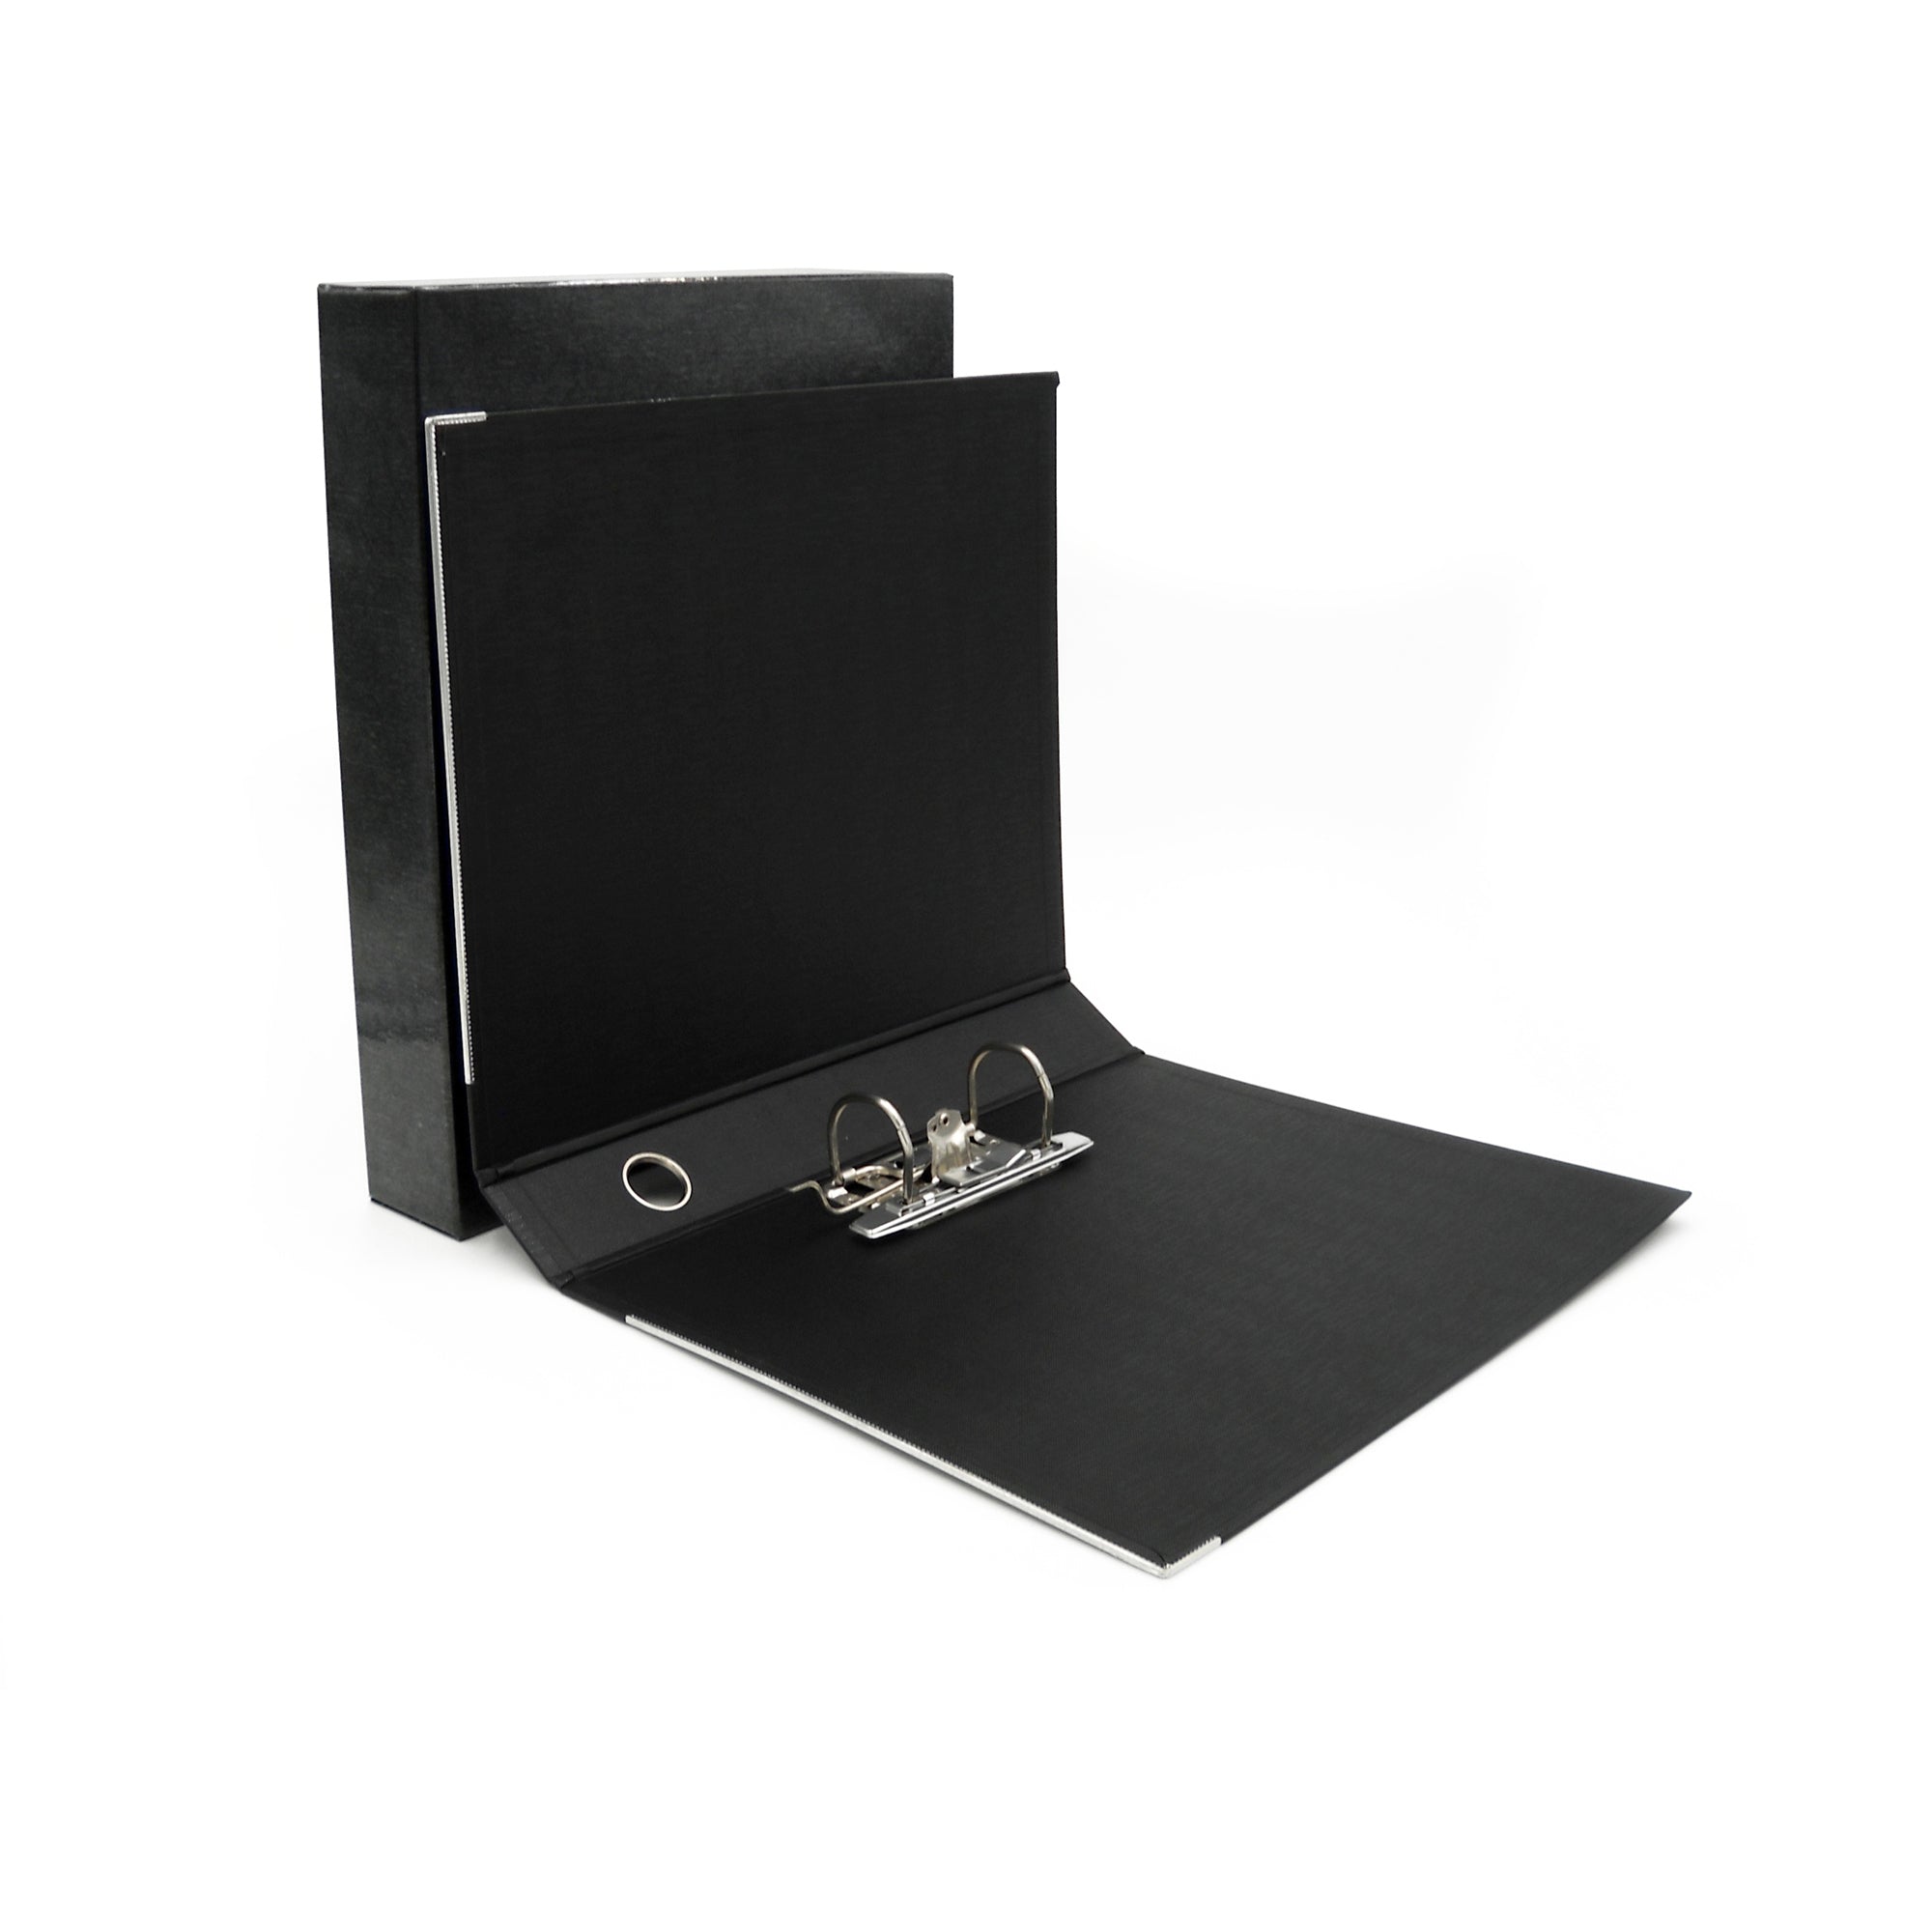 starline-registratore-kingbox-f-to-protocollo-dorso-5cm-nero